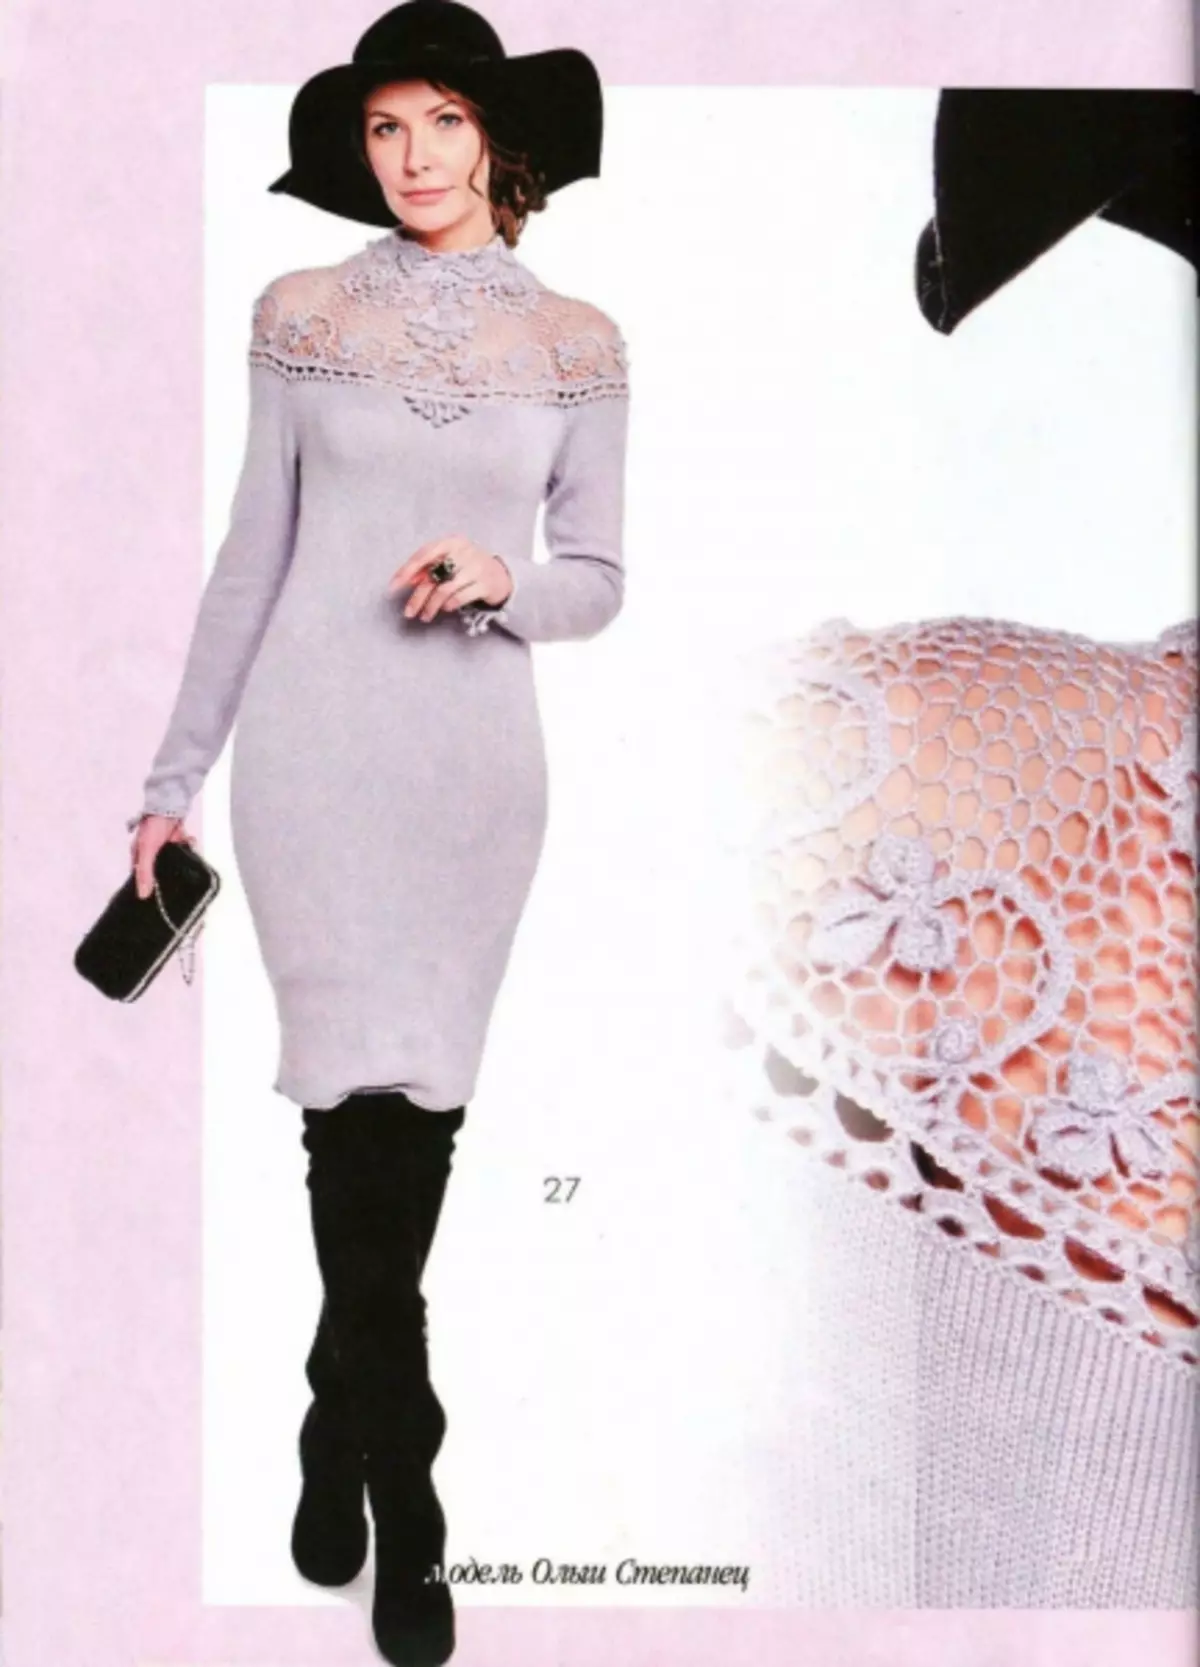 Moda de la revista 616 - 2019. Modelos con estilo